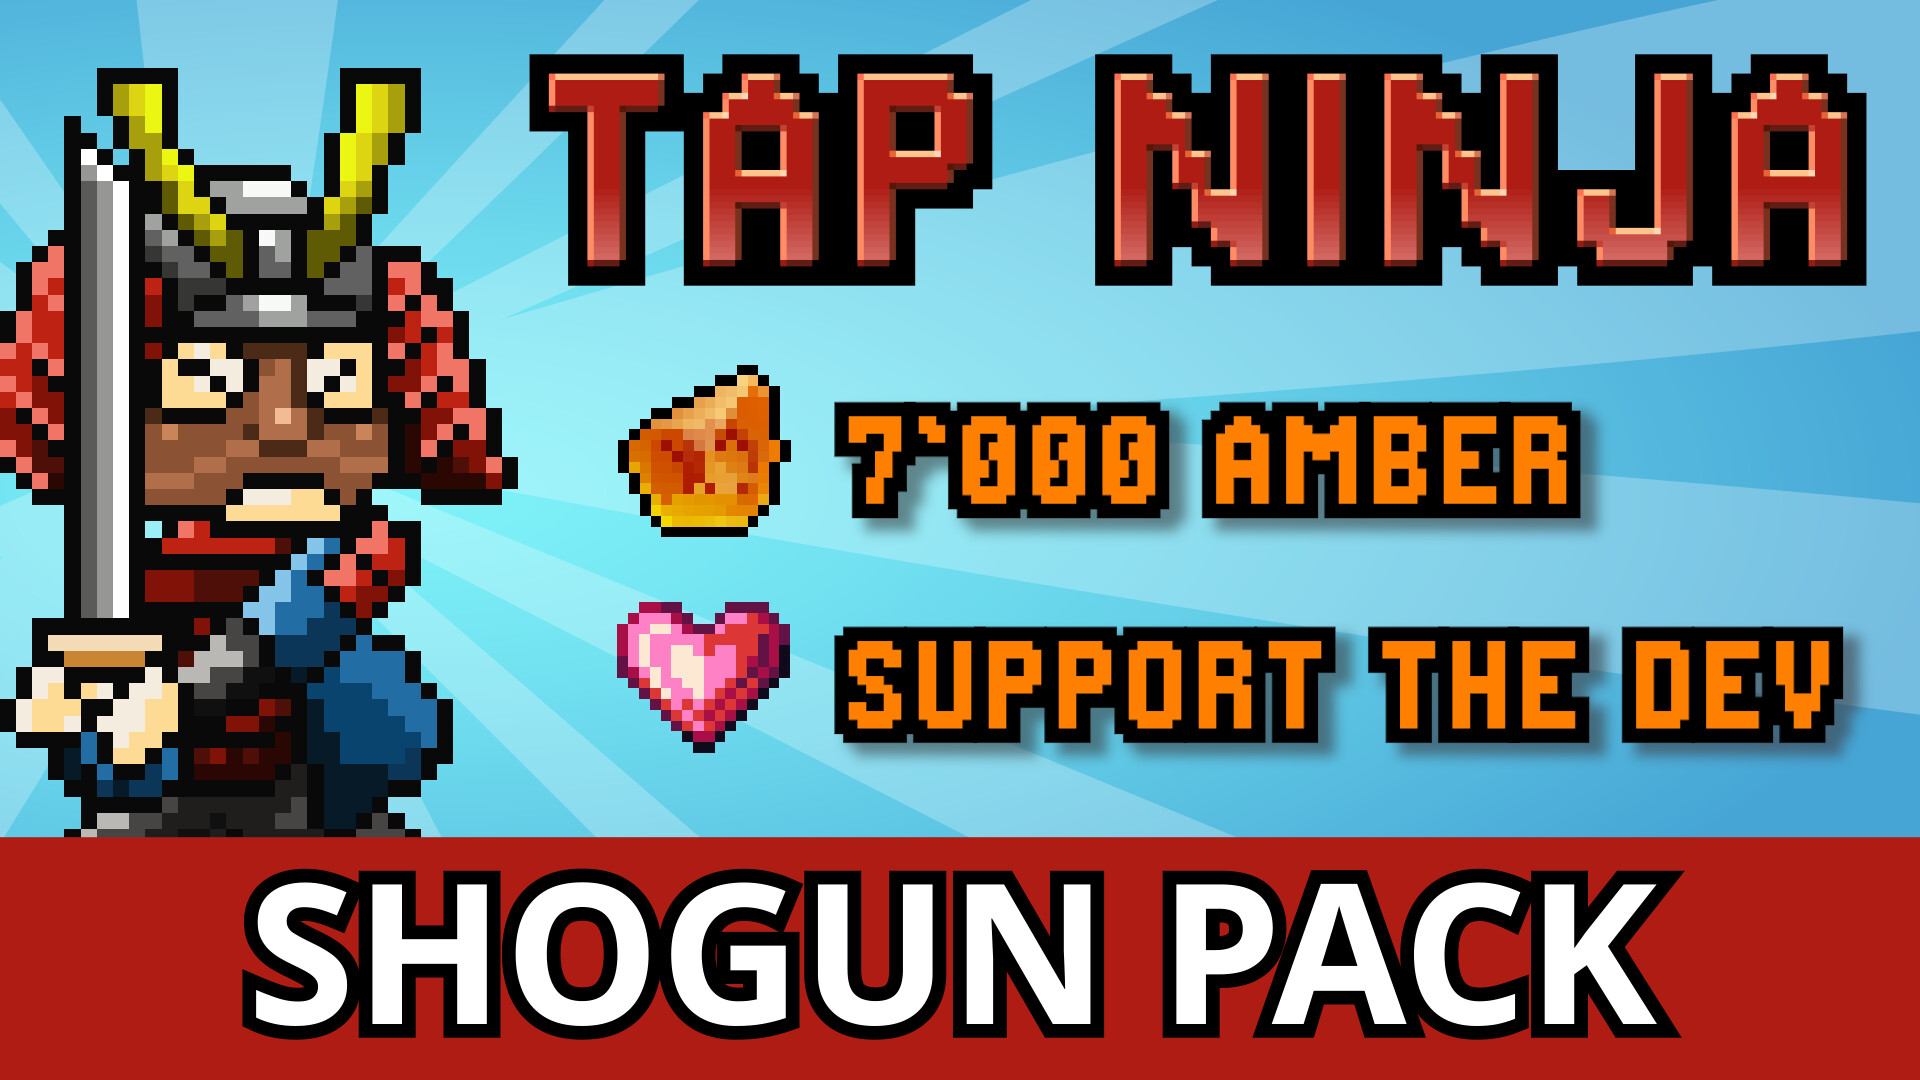 Tap Ninja - Shogun Supporter Pack Featured Screenshot #1